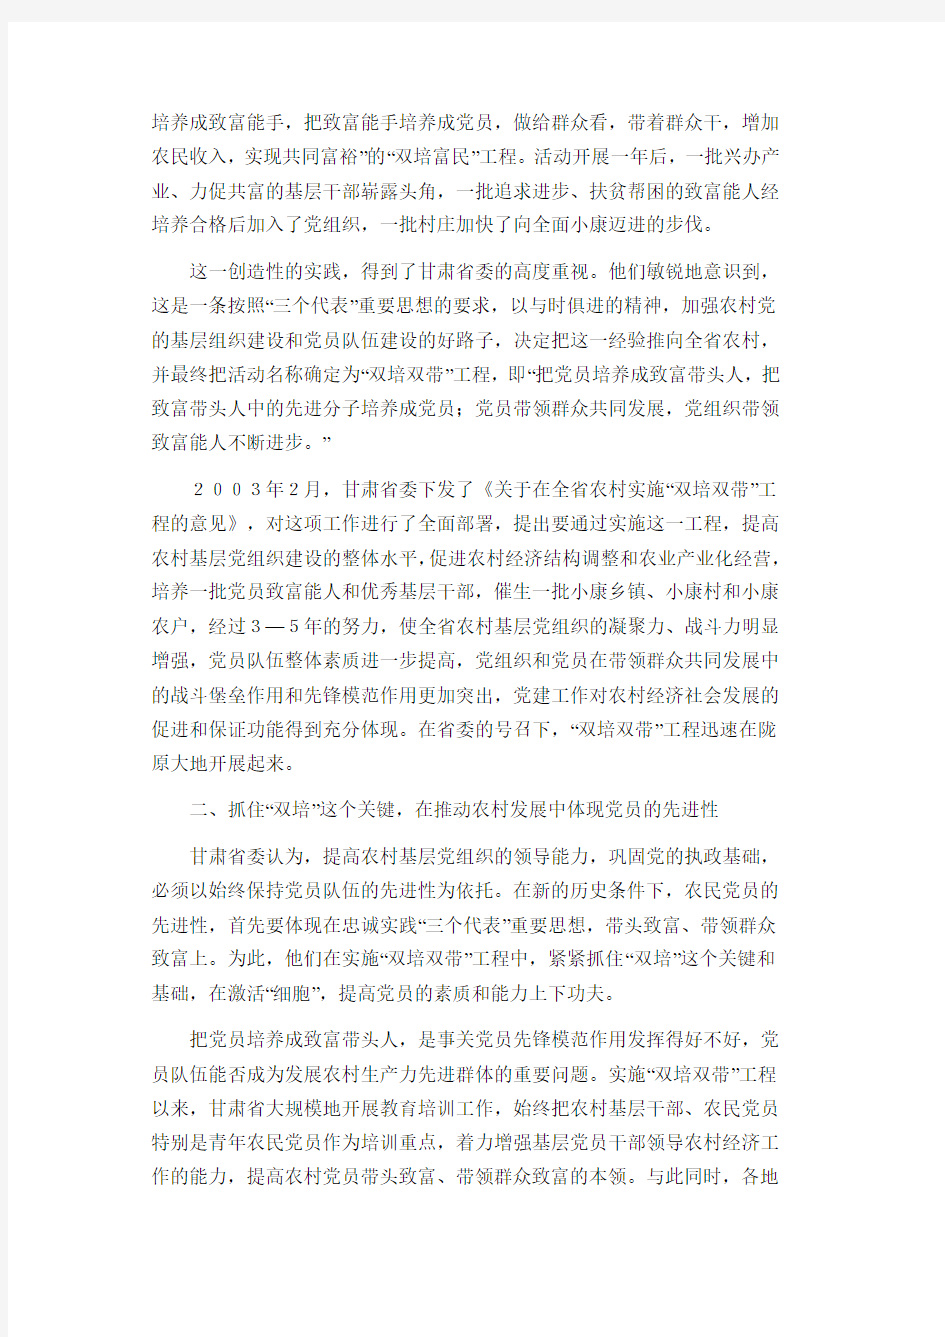 甘肃省农村基层党组织实施“双培双带”工程的调查